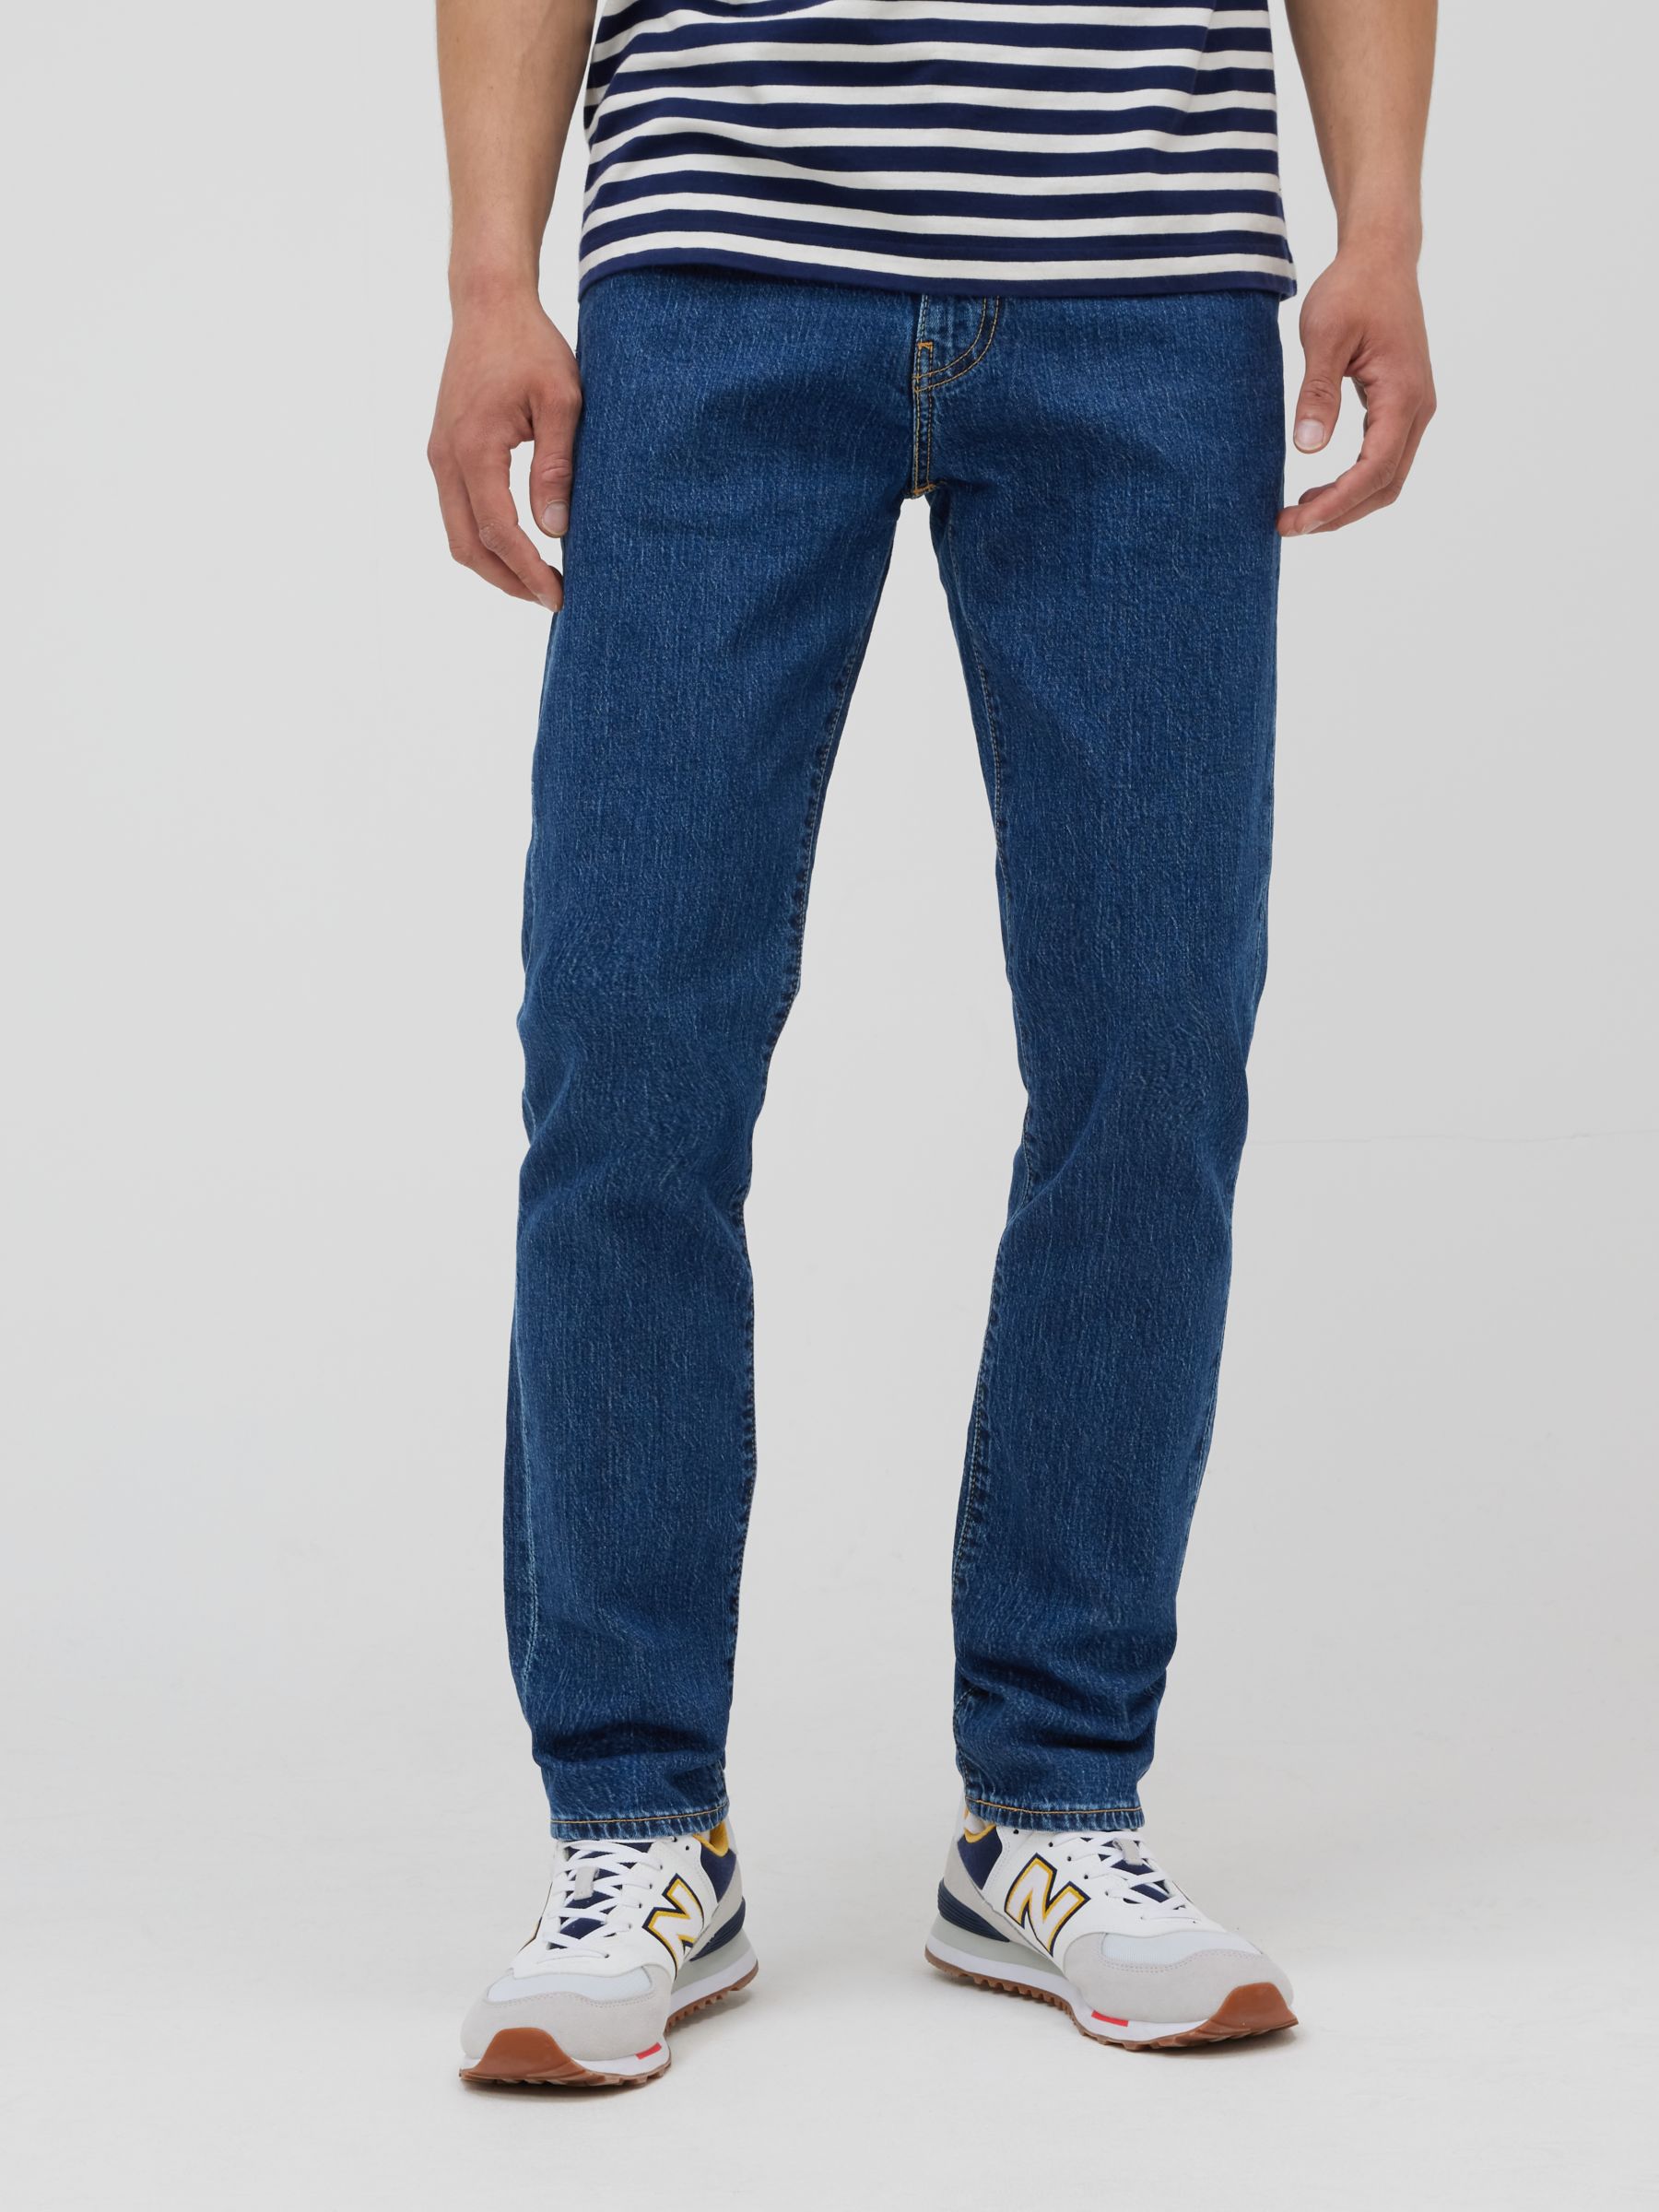 Levi's 511 Slim Jeans, Indigo Stone Wash at John Lewis & Partners